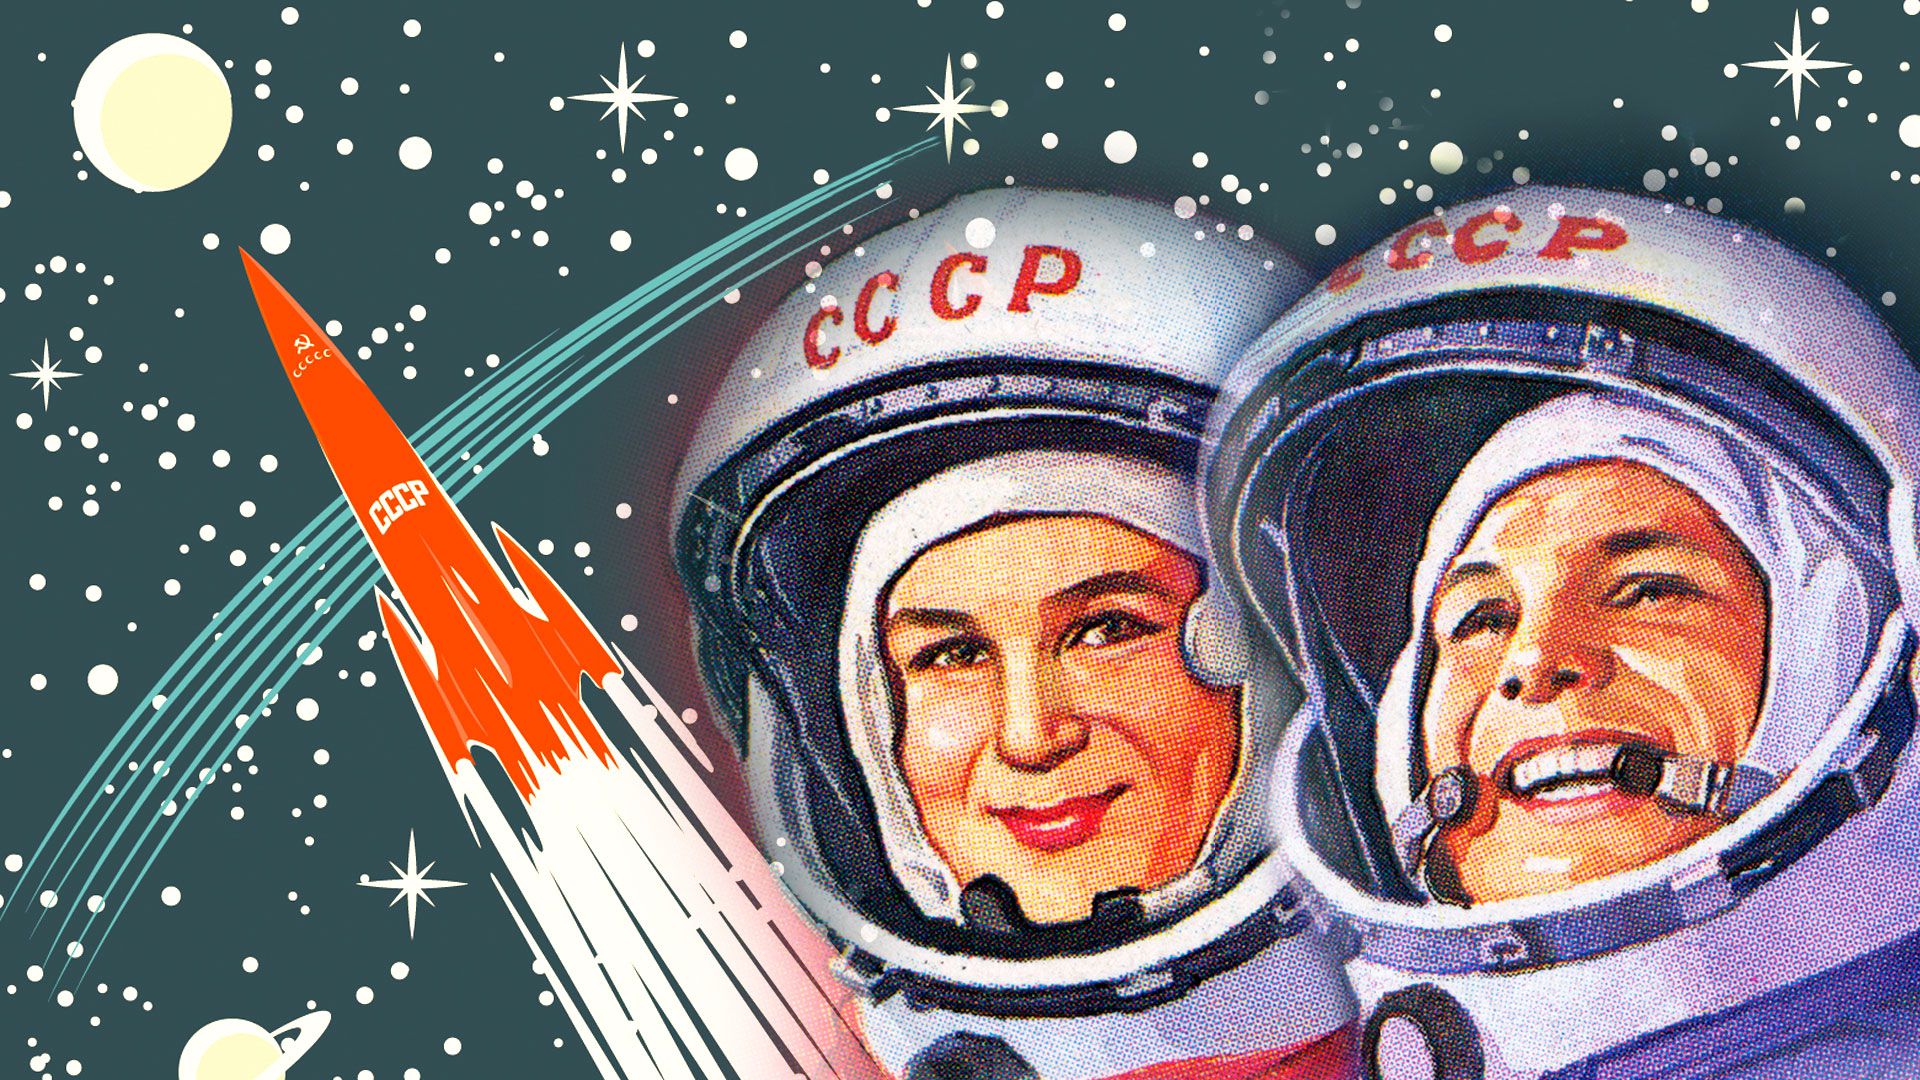 Valentina Tereshkova y Yuri Gagarin, la primera mujer y el primer hombre rusos en viajar al espacio fueron un acicate para que Estados Unidos se impusiera llegar primero a la luna.